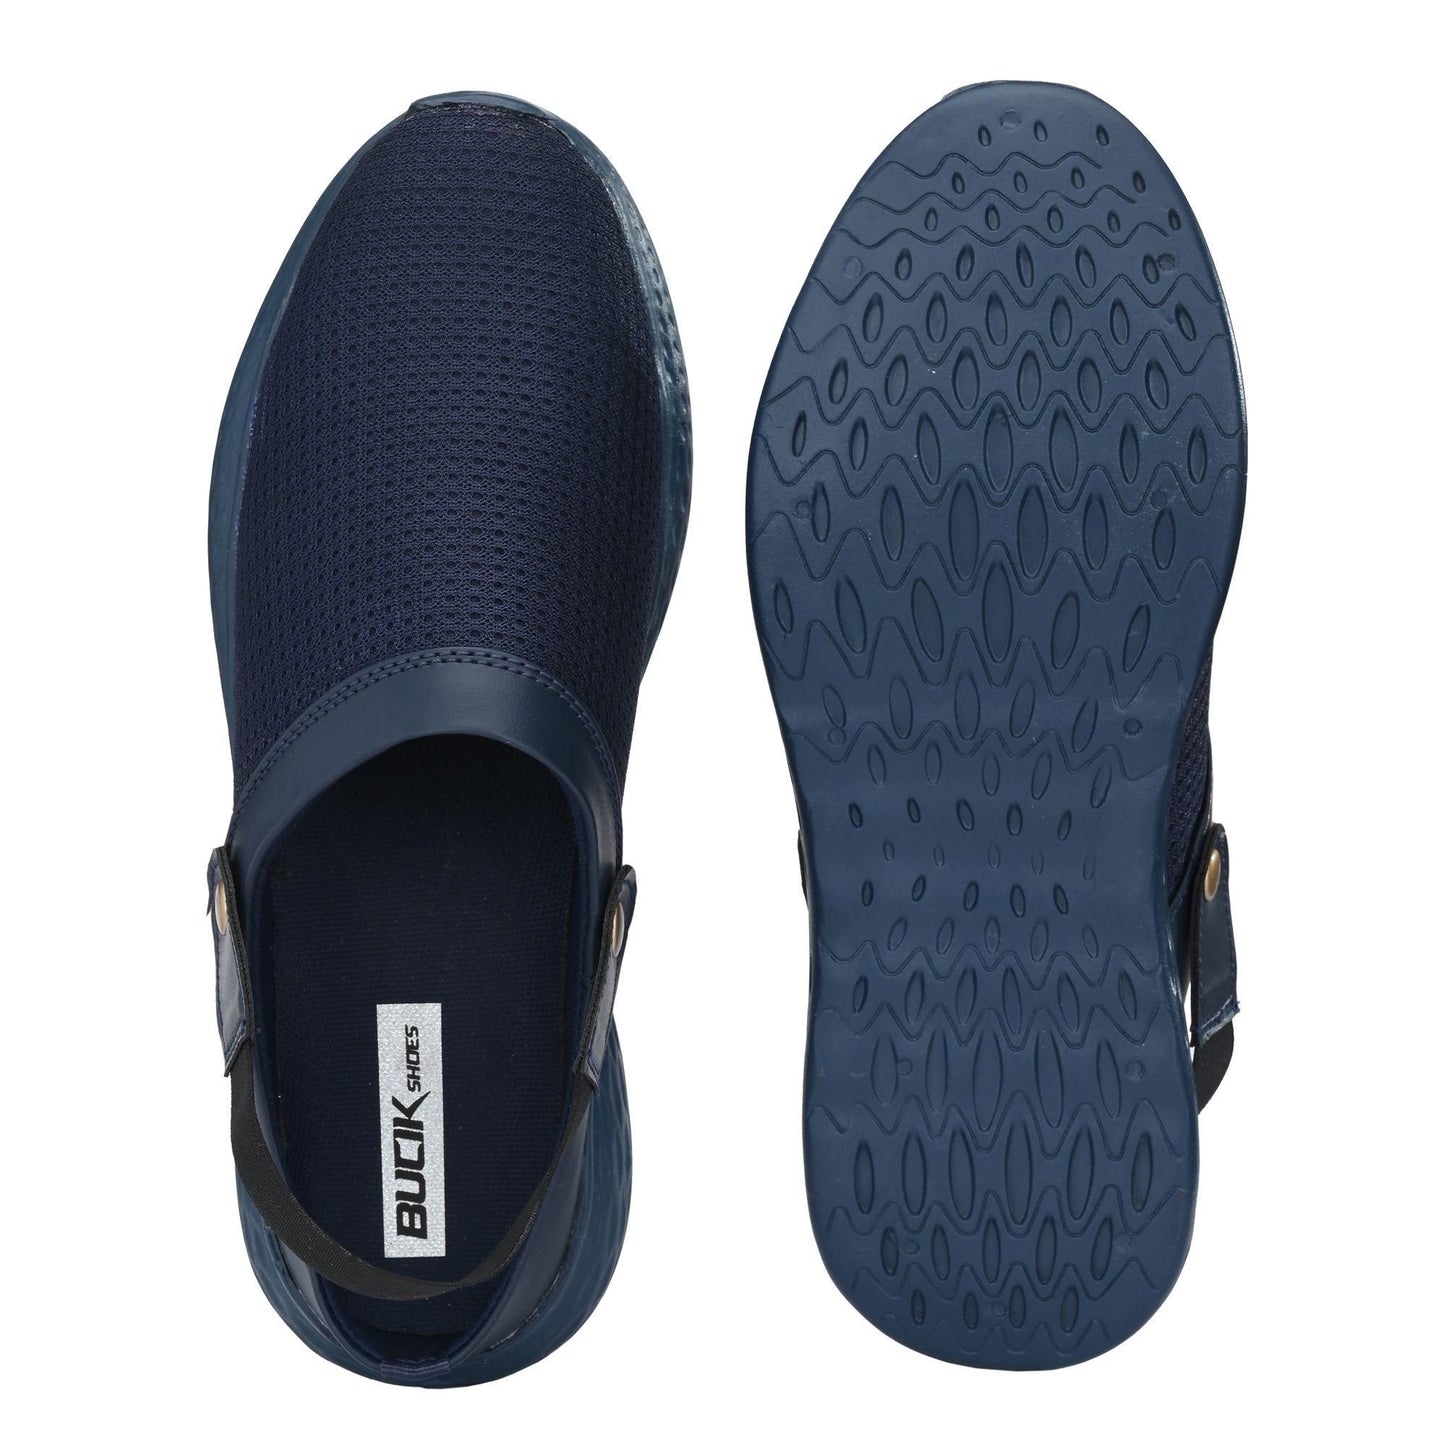 Bucik Blue Mesh Sandal for Men's